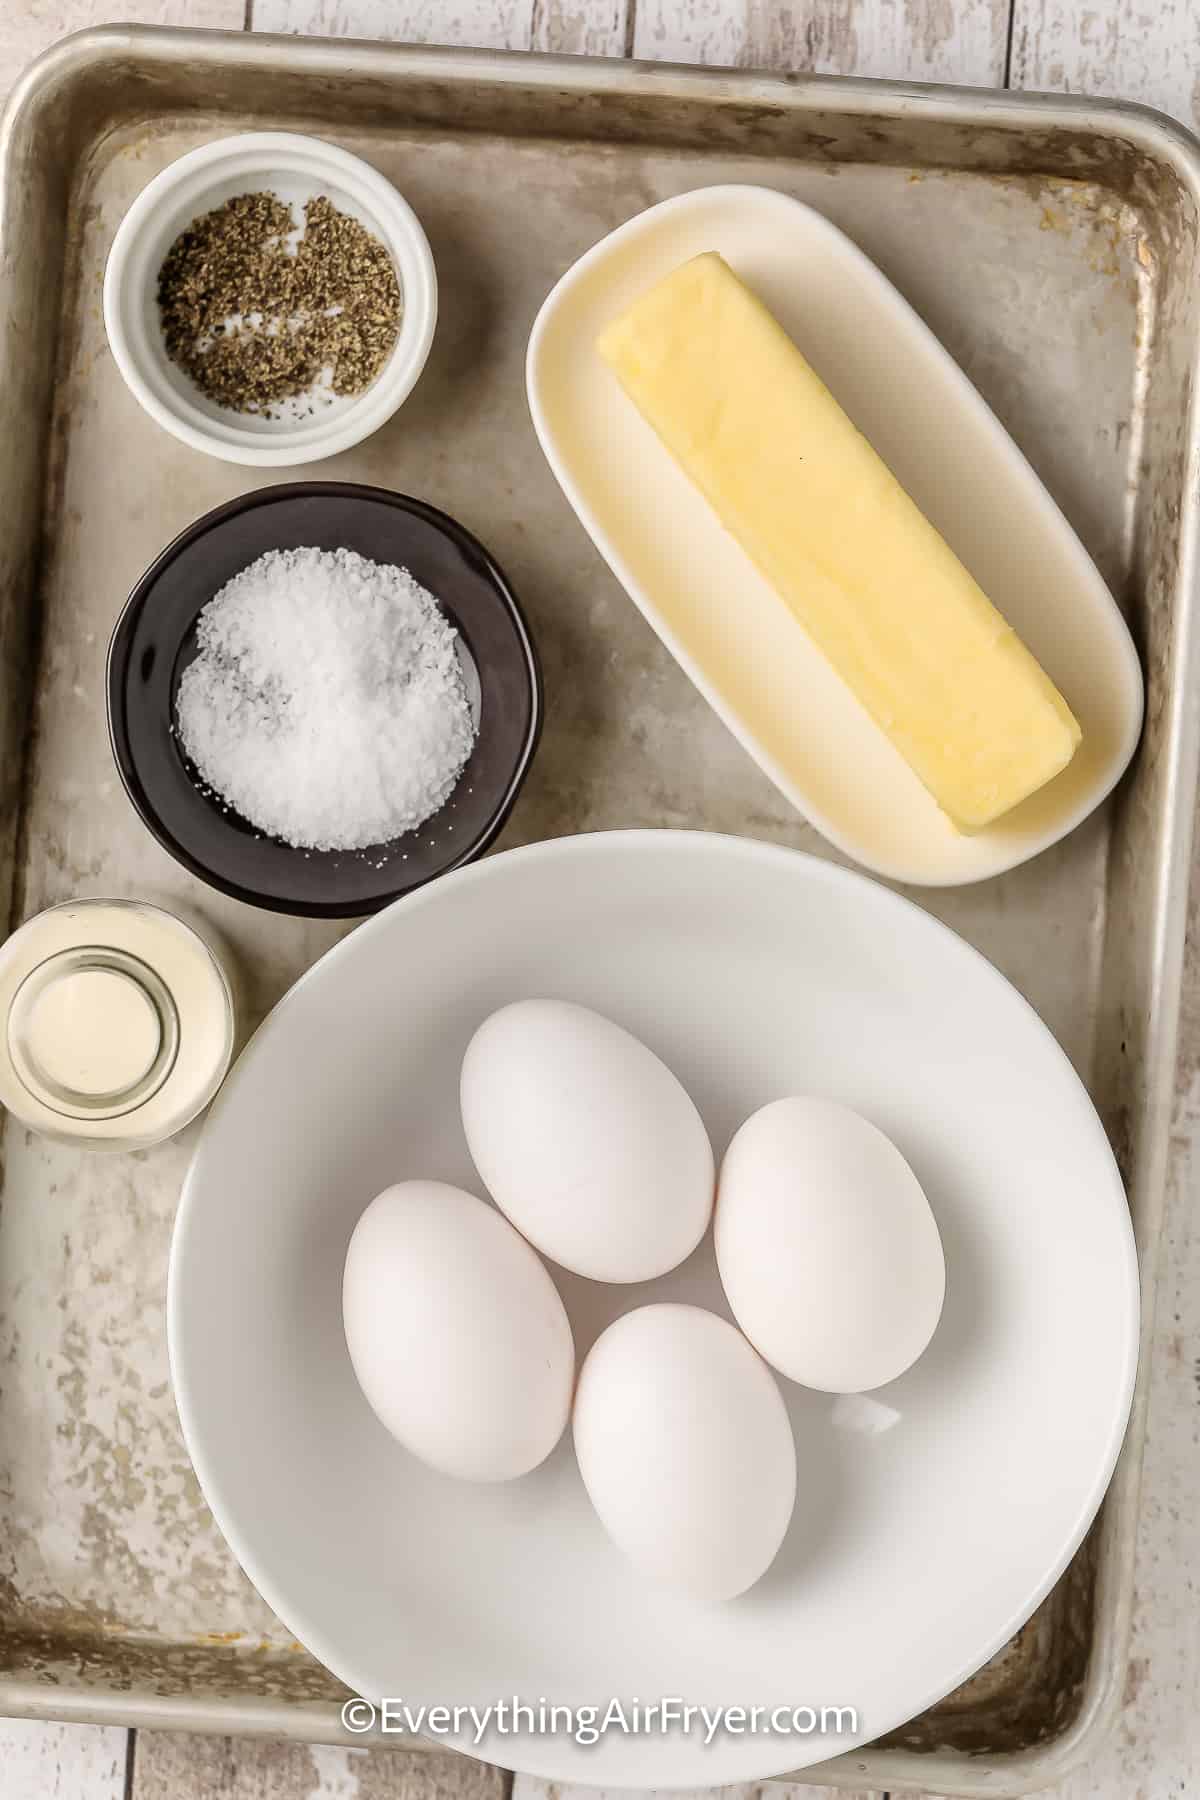 Ingredients to make Microwave Eggs